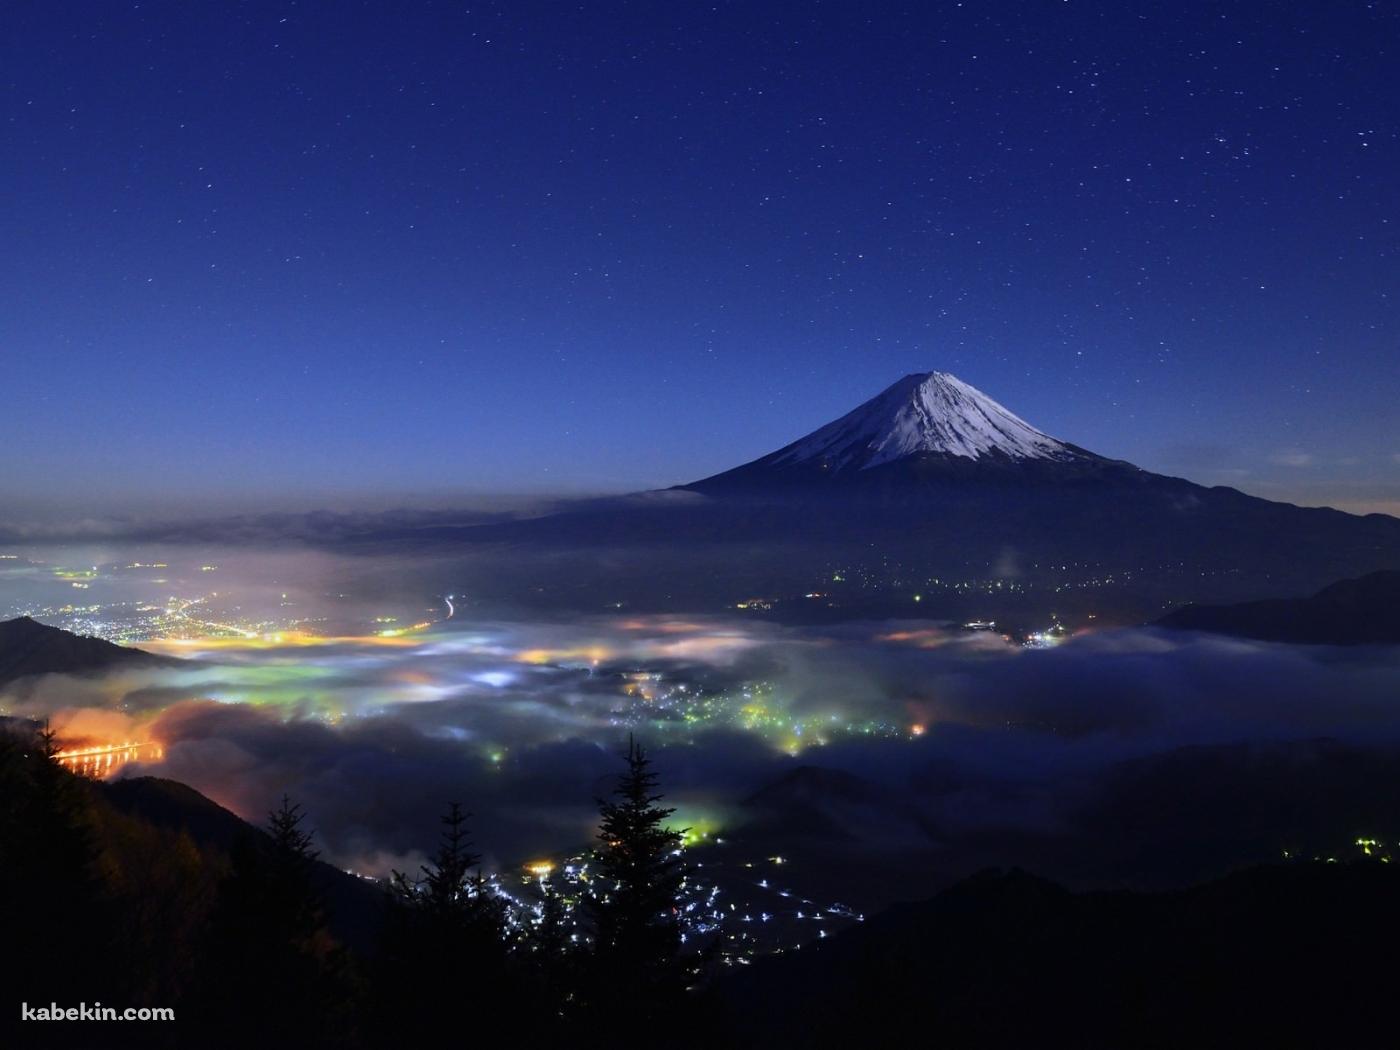 富士山と星空 日本 静岡県 山梨県の壁紙(1400px x 1050px) 高画質 PC・デスクトップ用